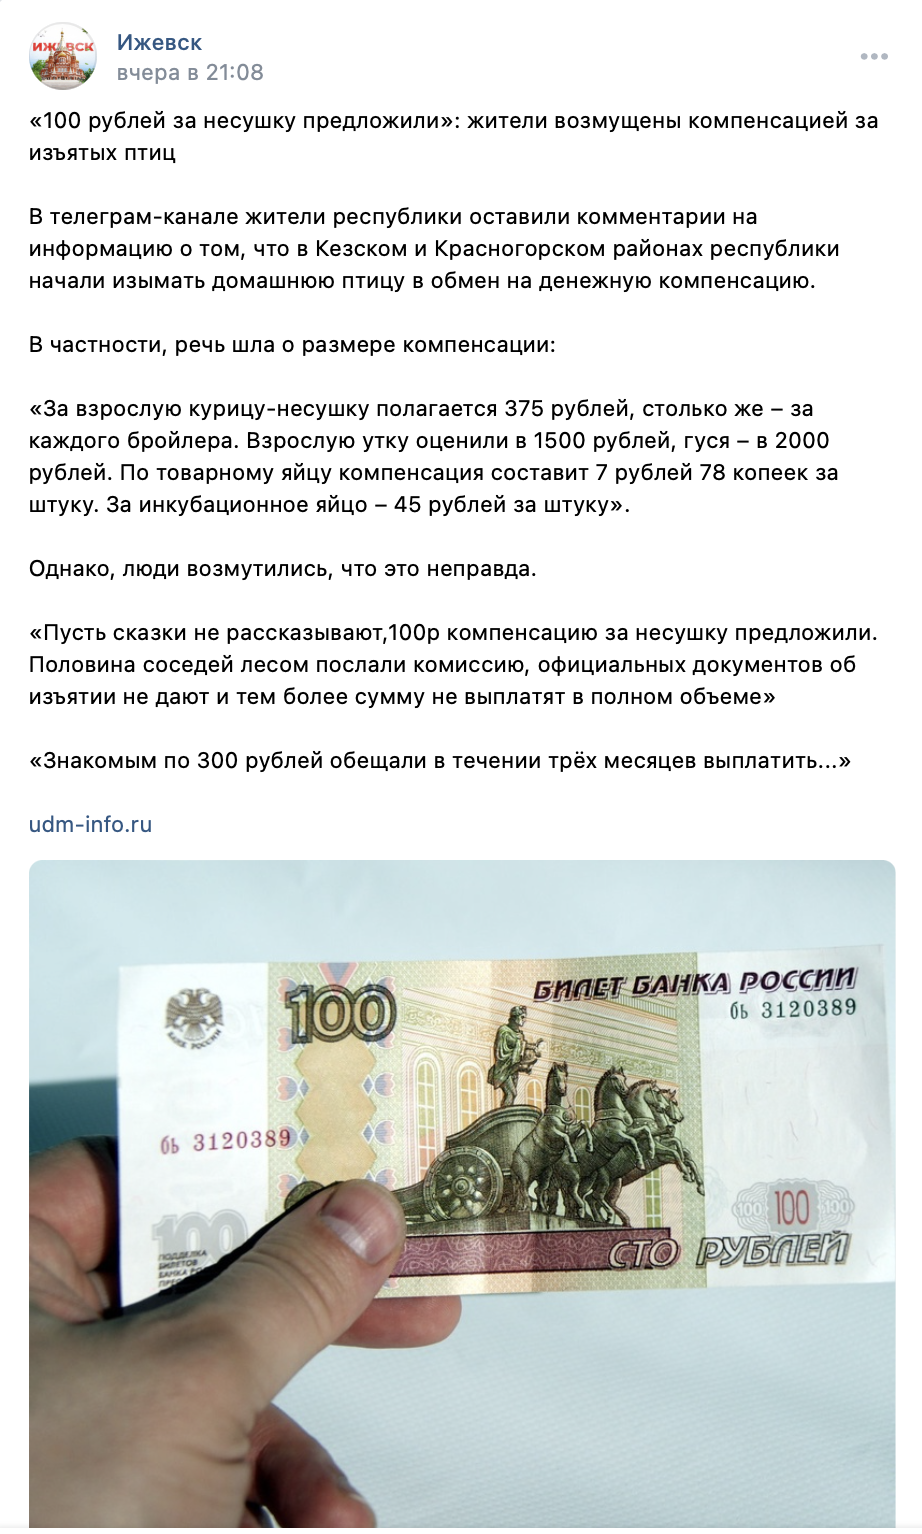 В Удмуртии за изъятых несушек выплачивают по 100 рублей